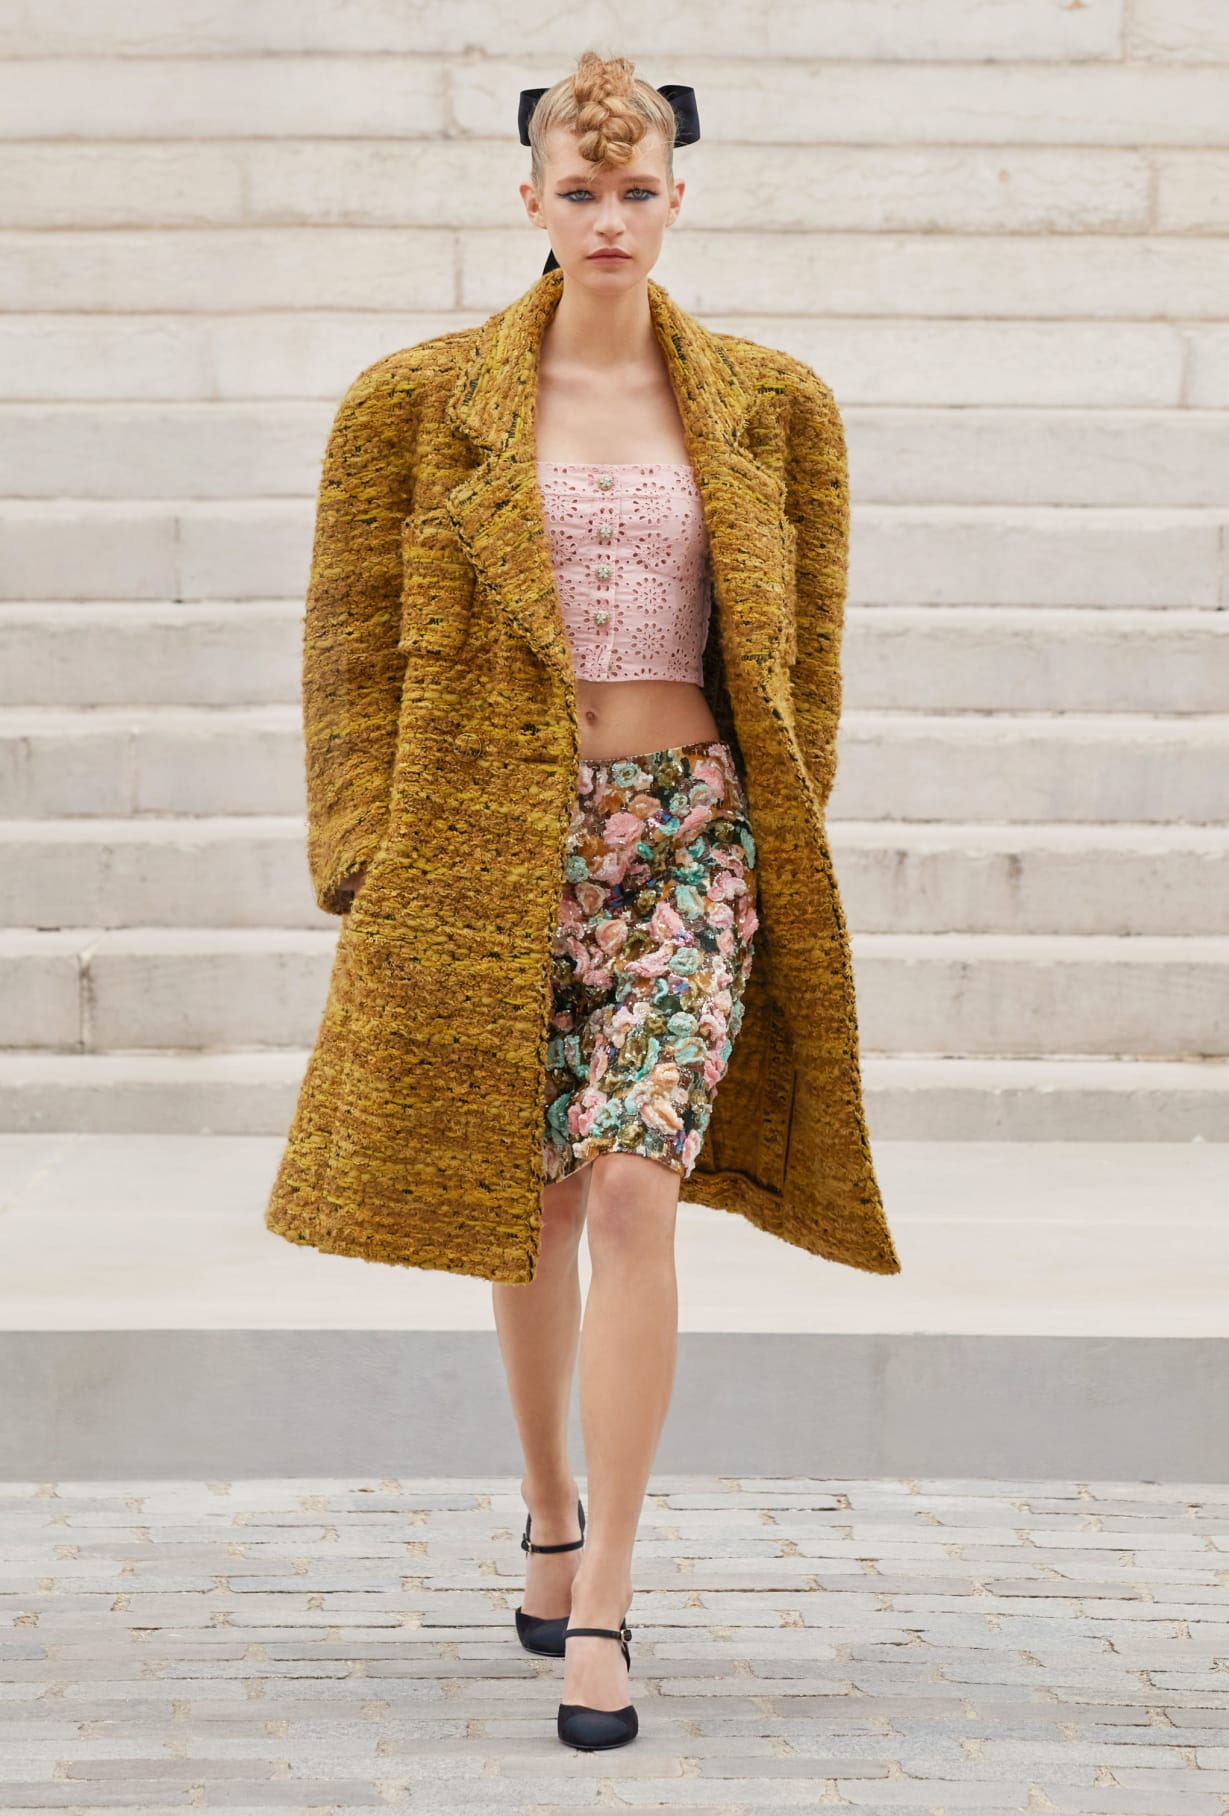 Chanel Haute Couture 2021: Sự tối giản của sàn diễn để tôn vinh trang phục  - Ảnh 9